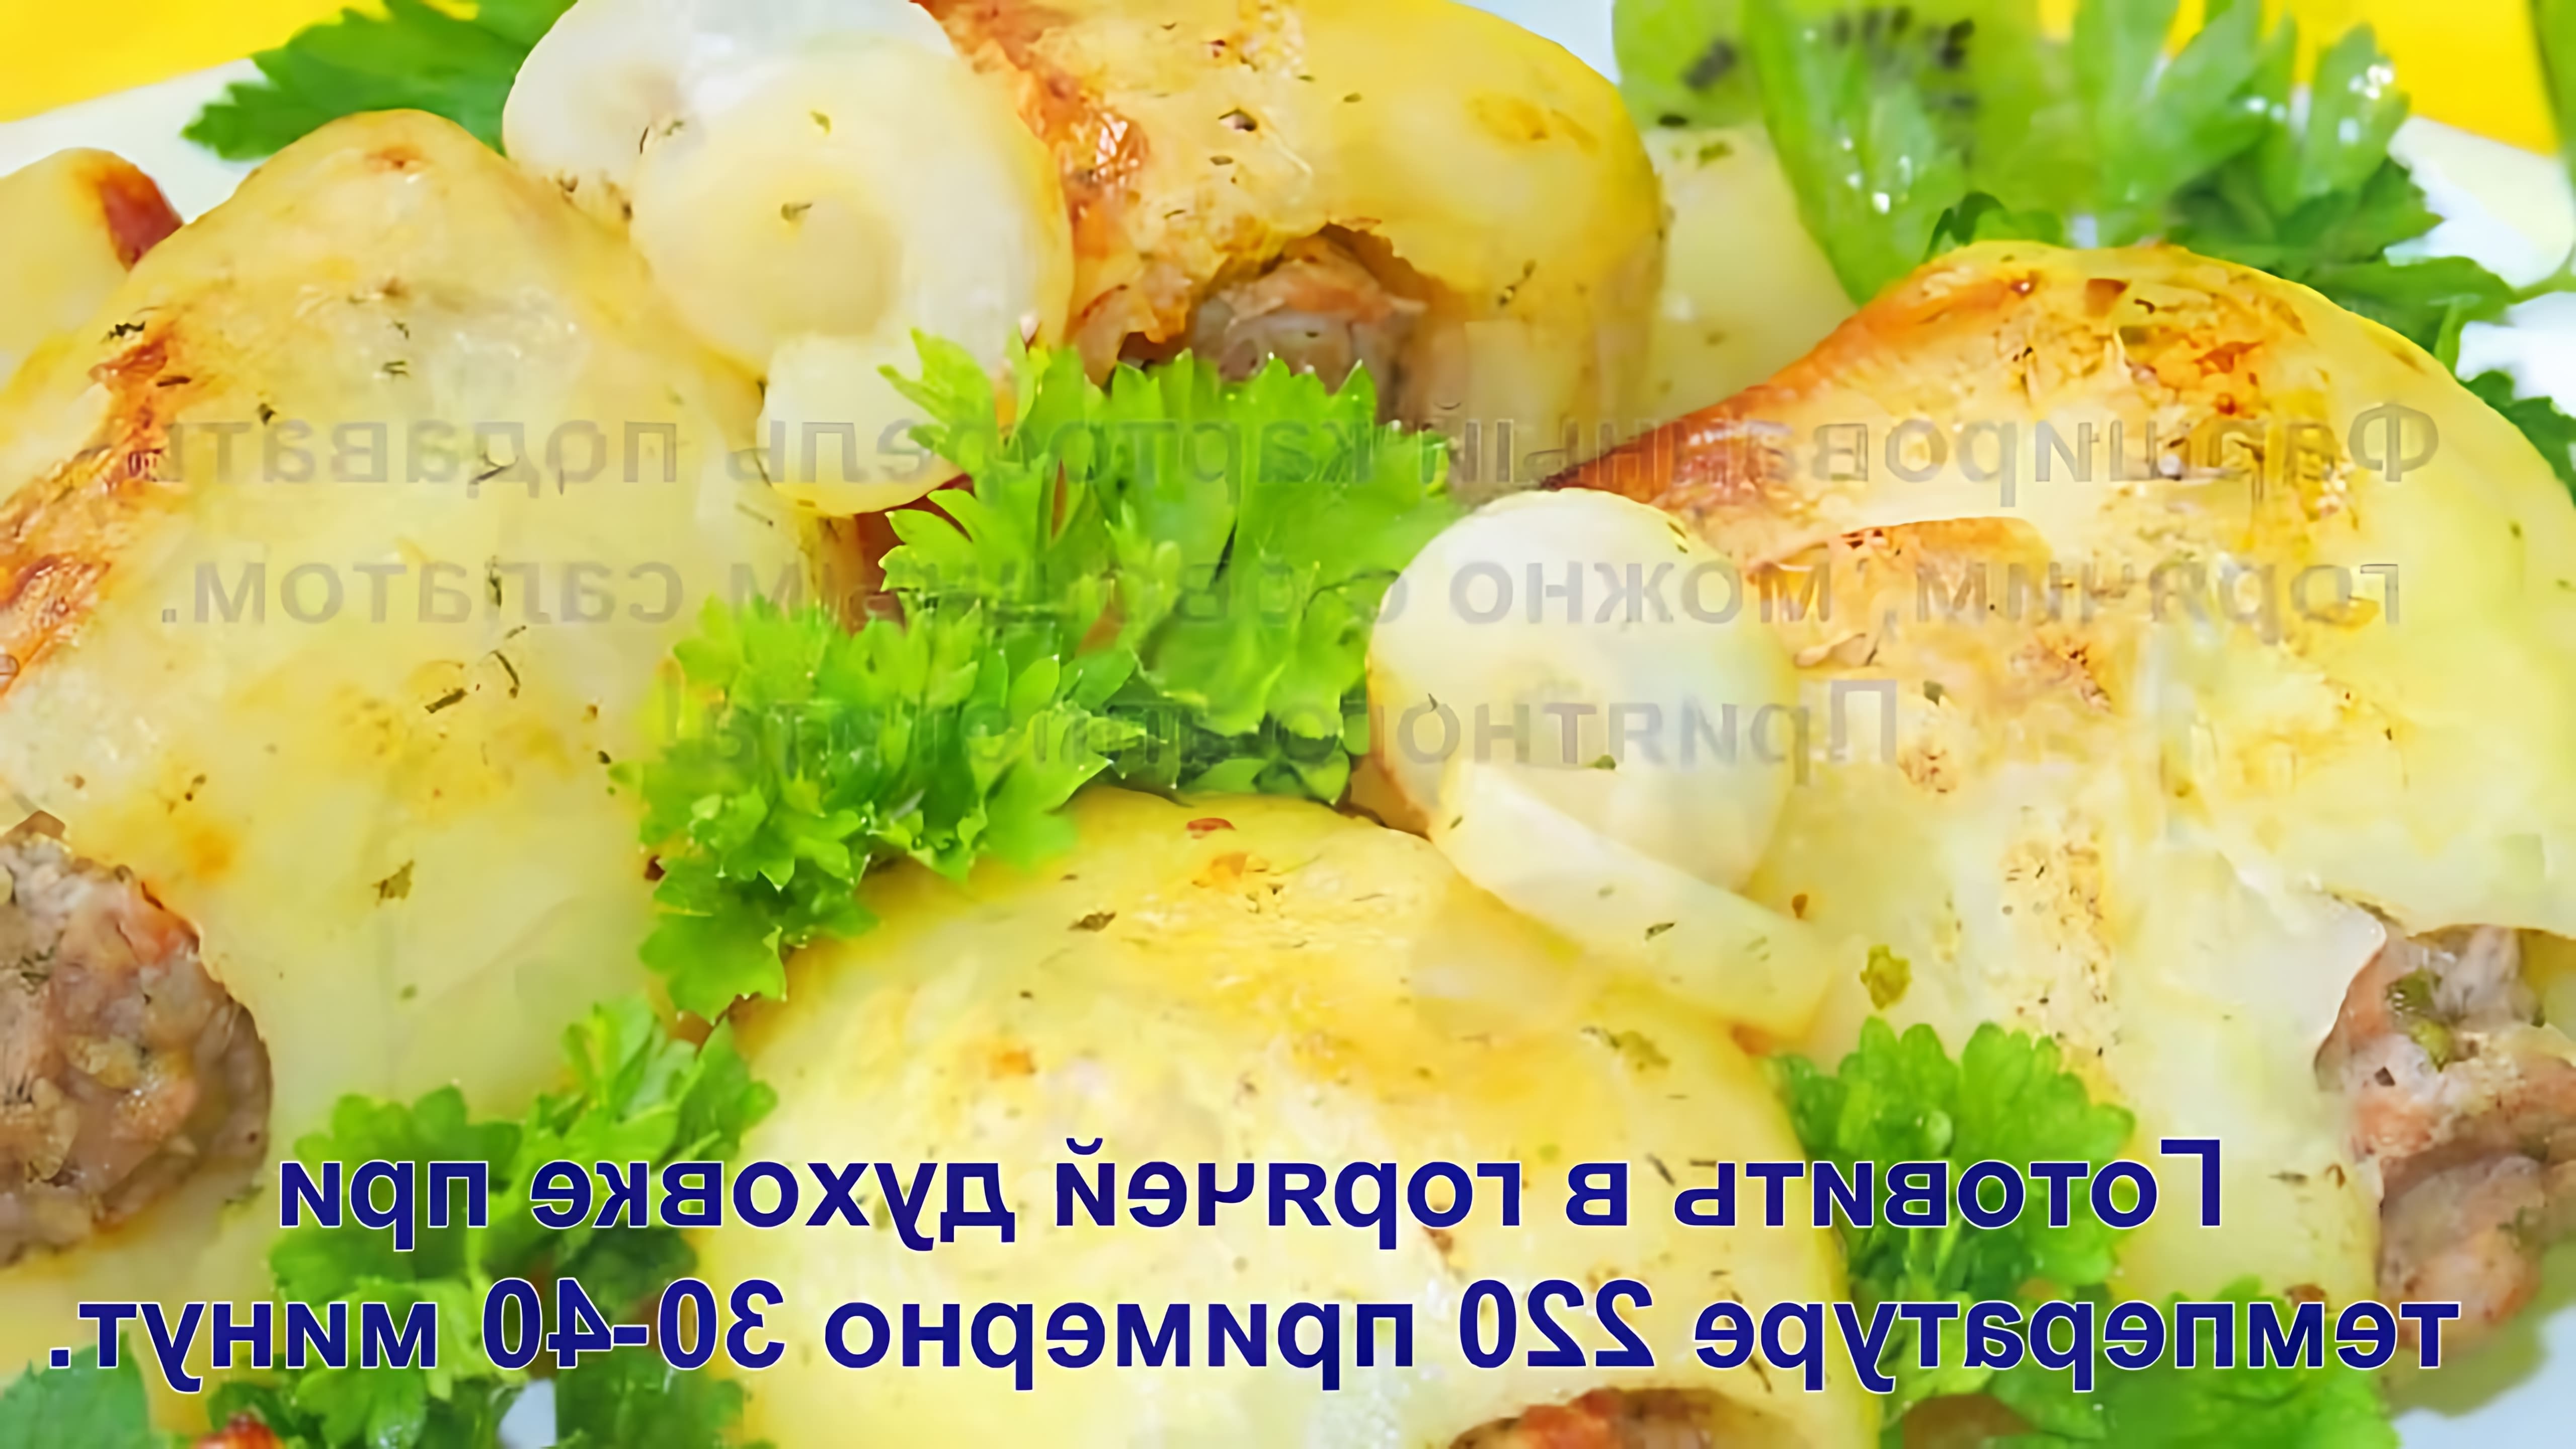 В этом видео-ролике будет показан процесс приготовления фаршированного картофеля, который является простым и вкусным вторым блюдом